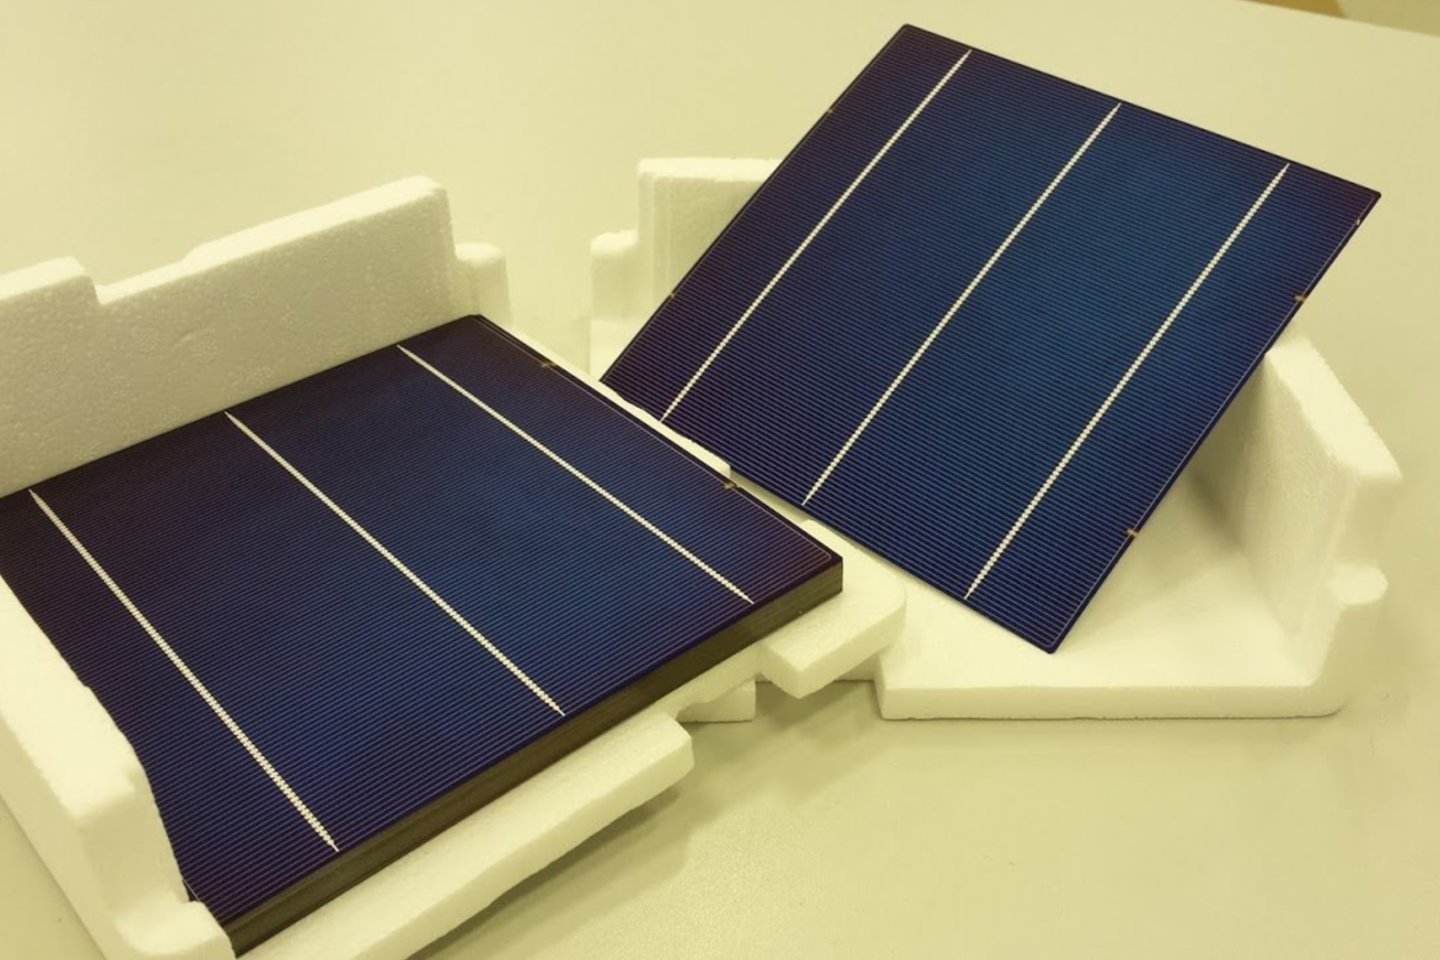  Saulės baterijos iš perdirbtų medžiagų.